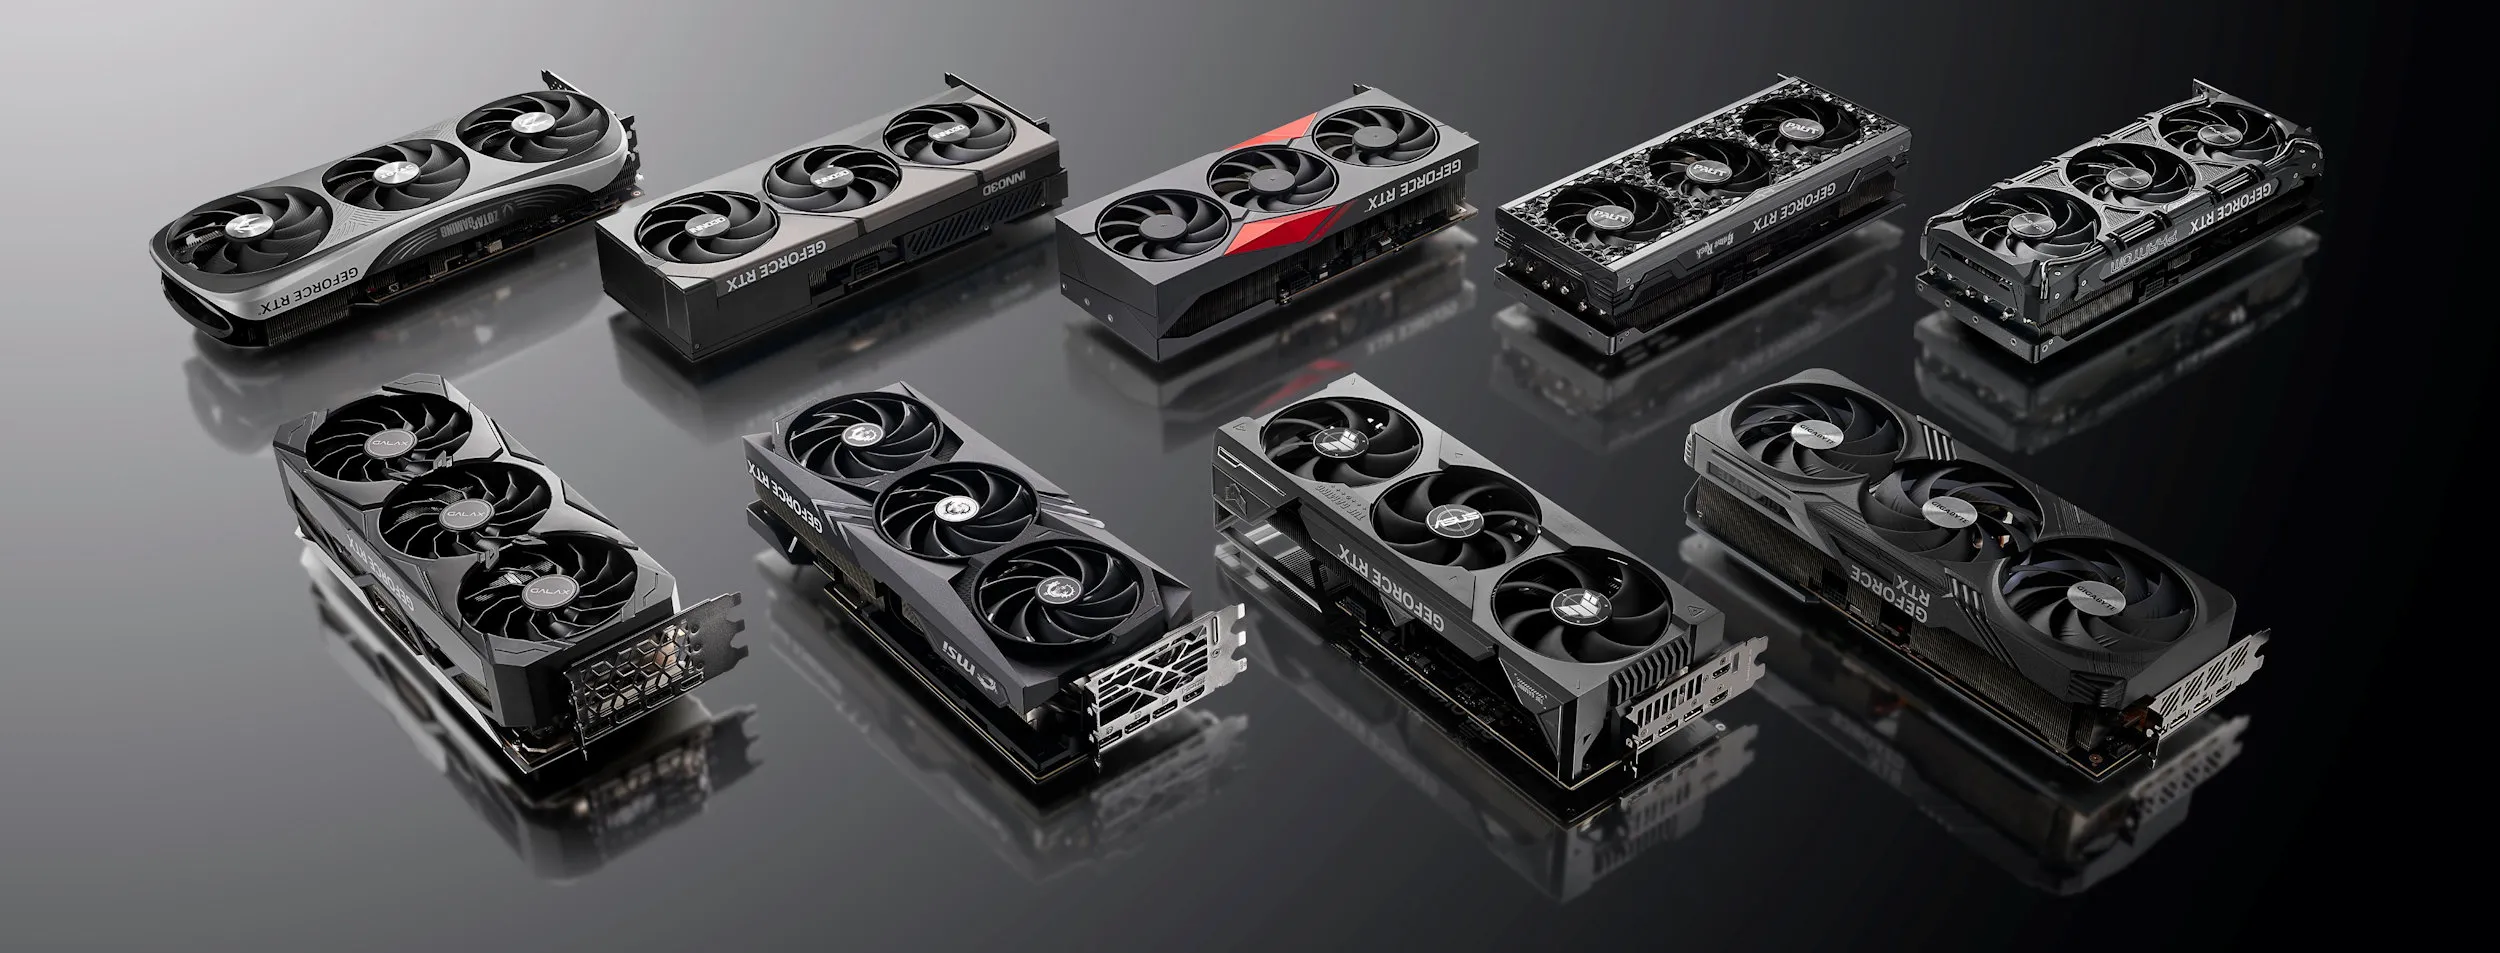 Inno3D công bố lineup GPU GeForce RTX 4090/4080